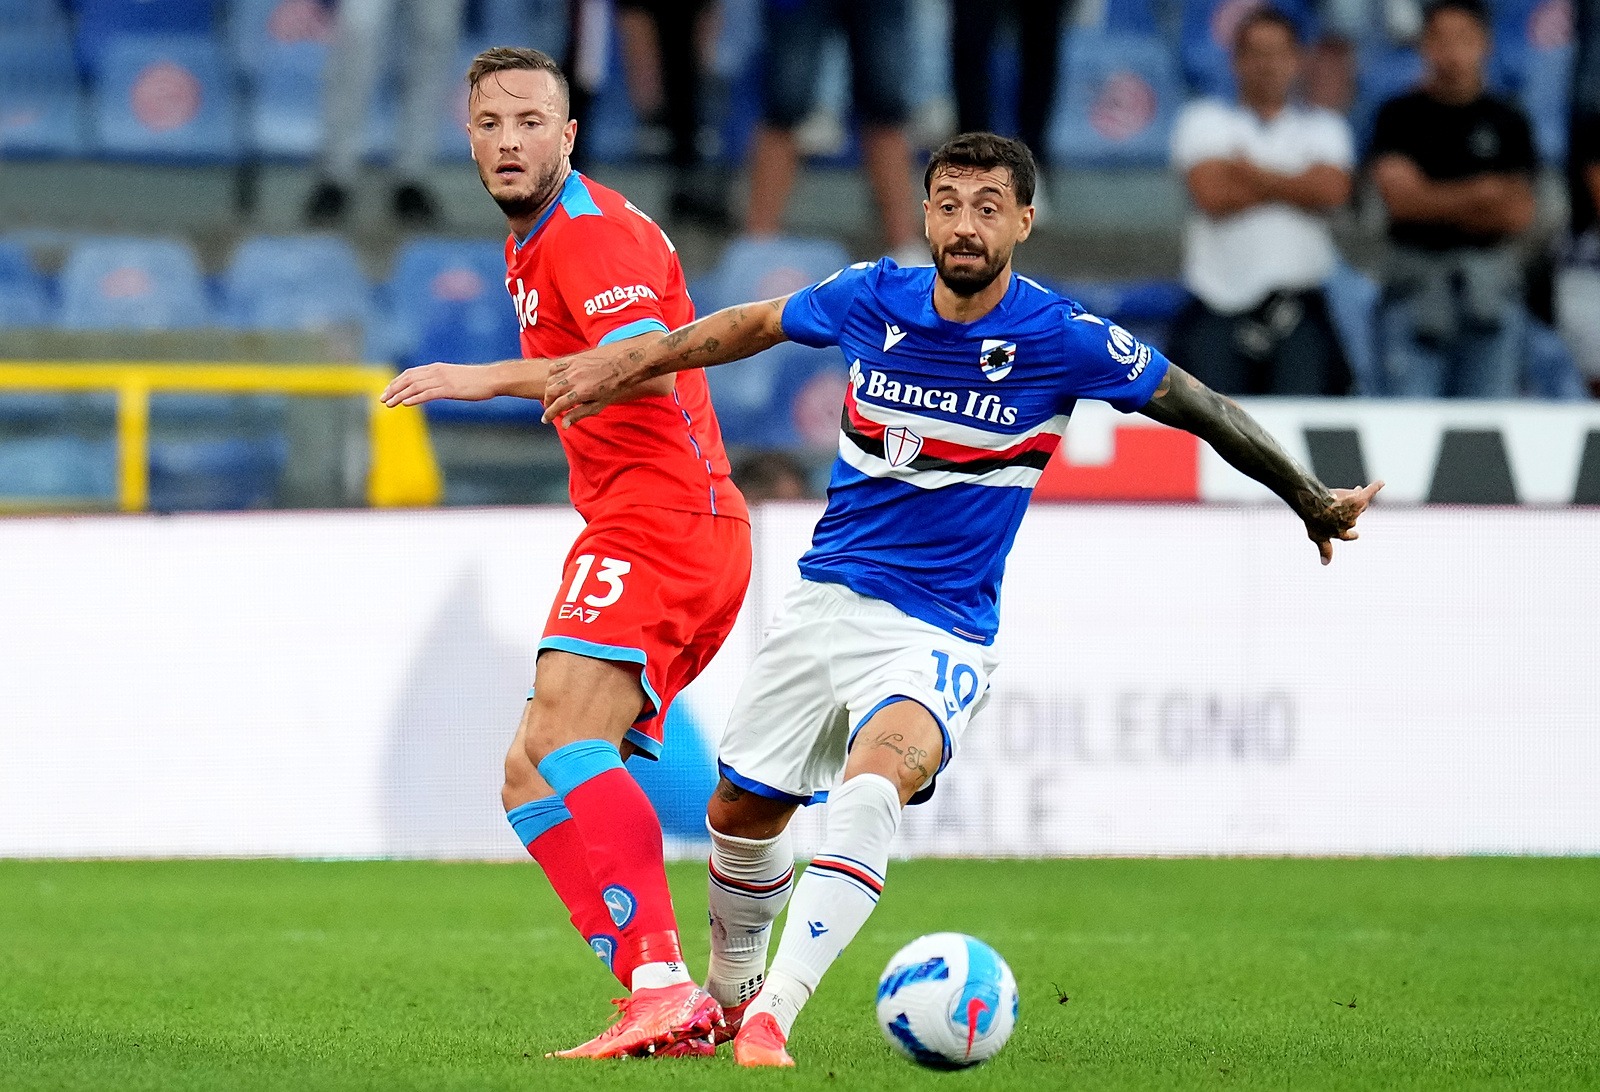 Napoli sampdoria betting on sports btc fresno